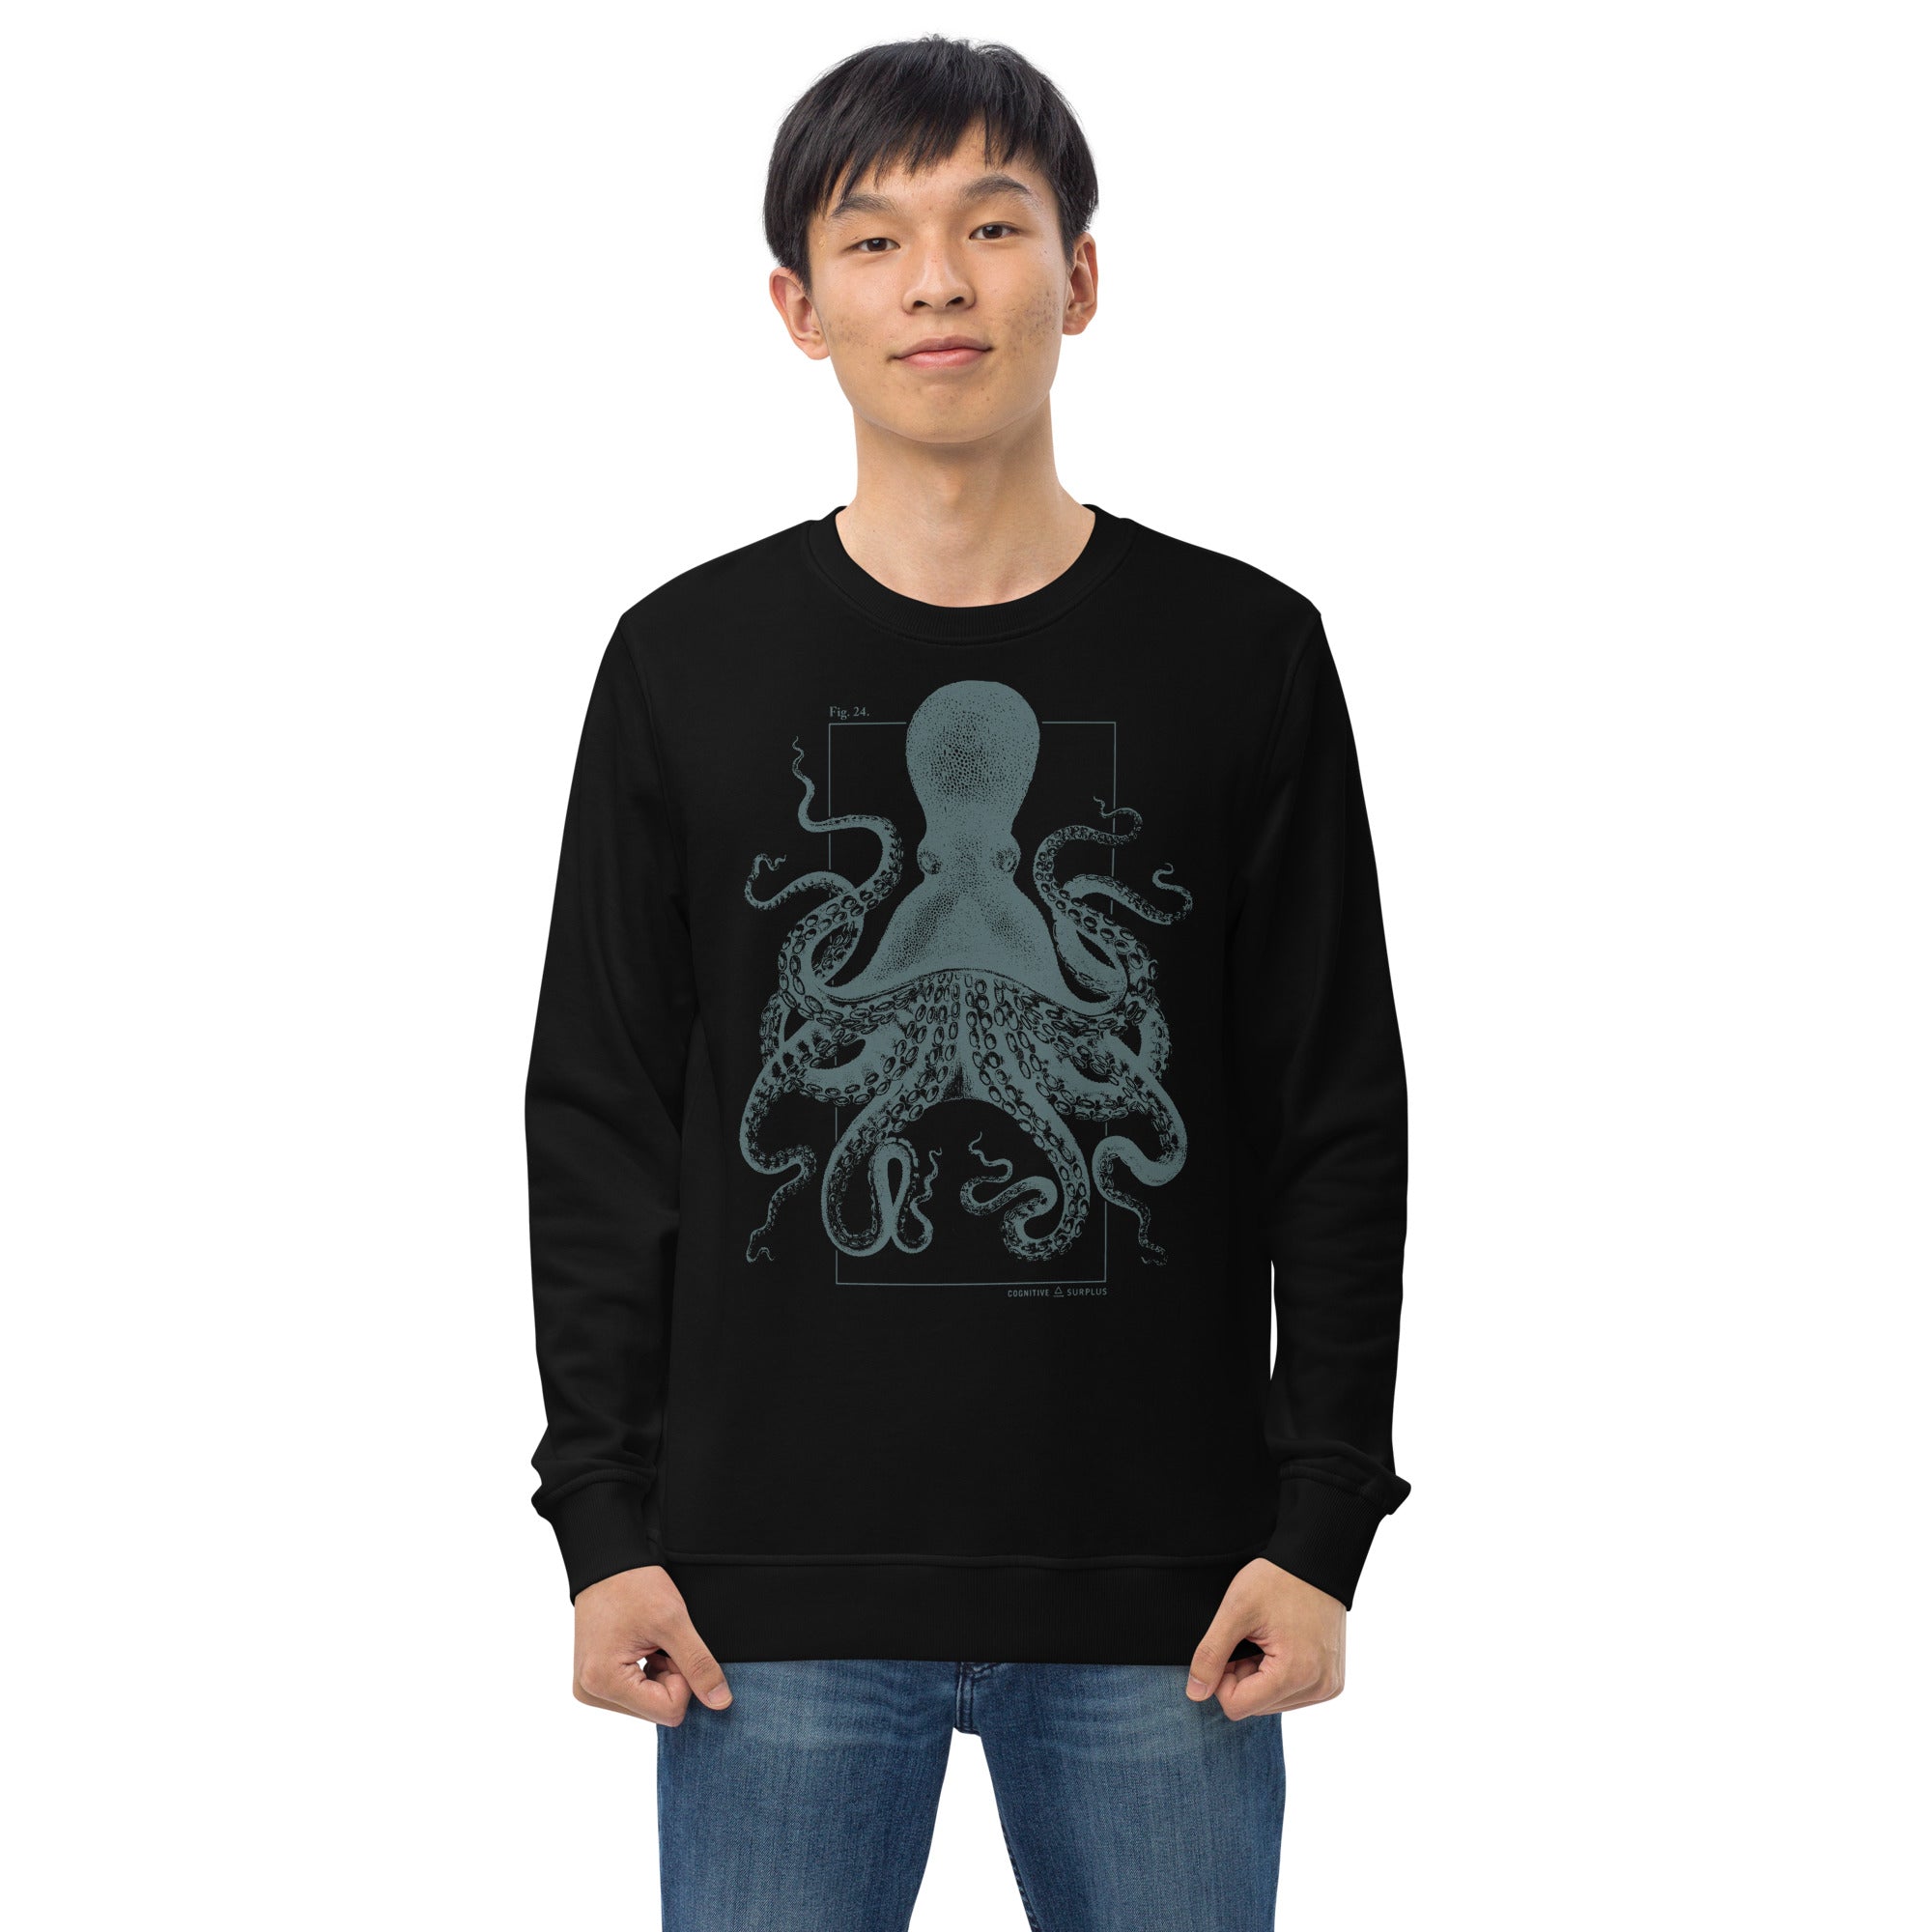 Beware the Kraken Sweatshirt - Organic